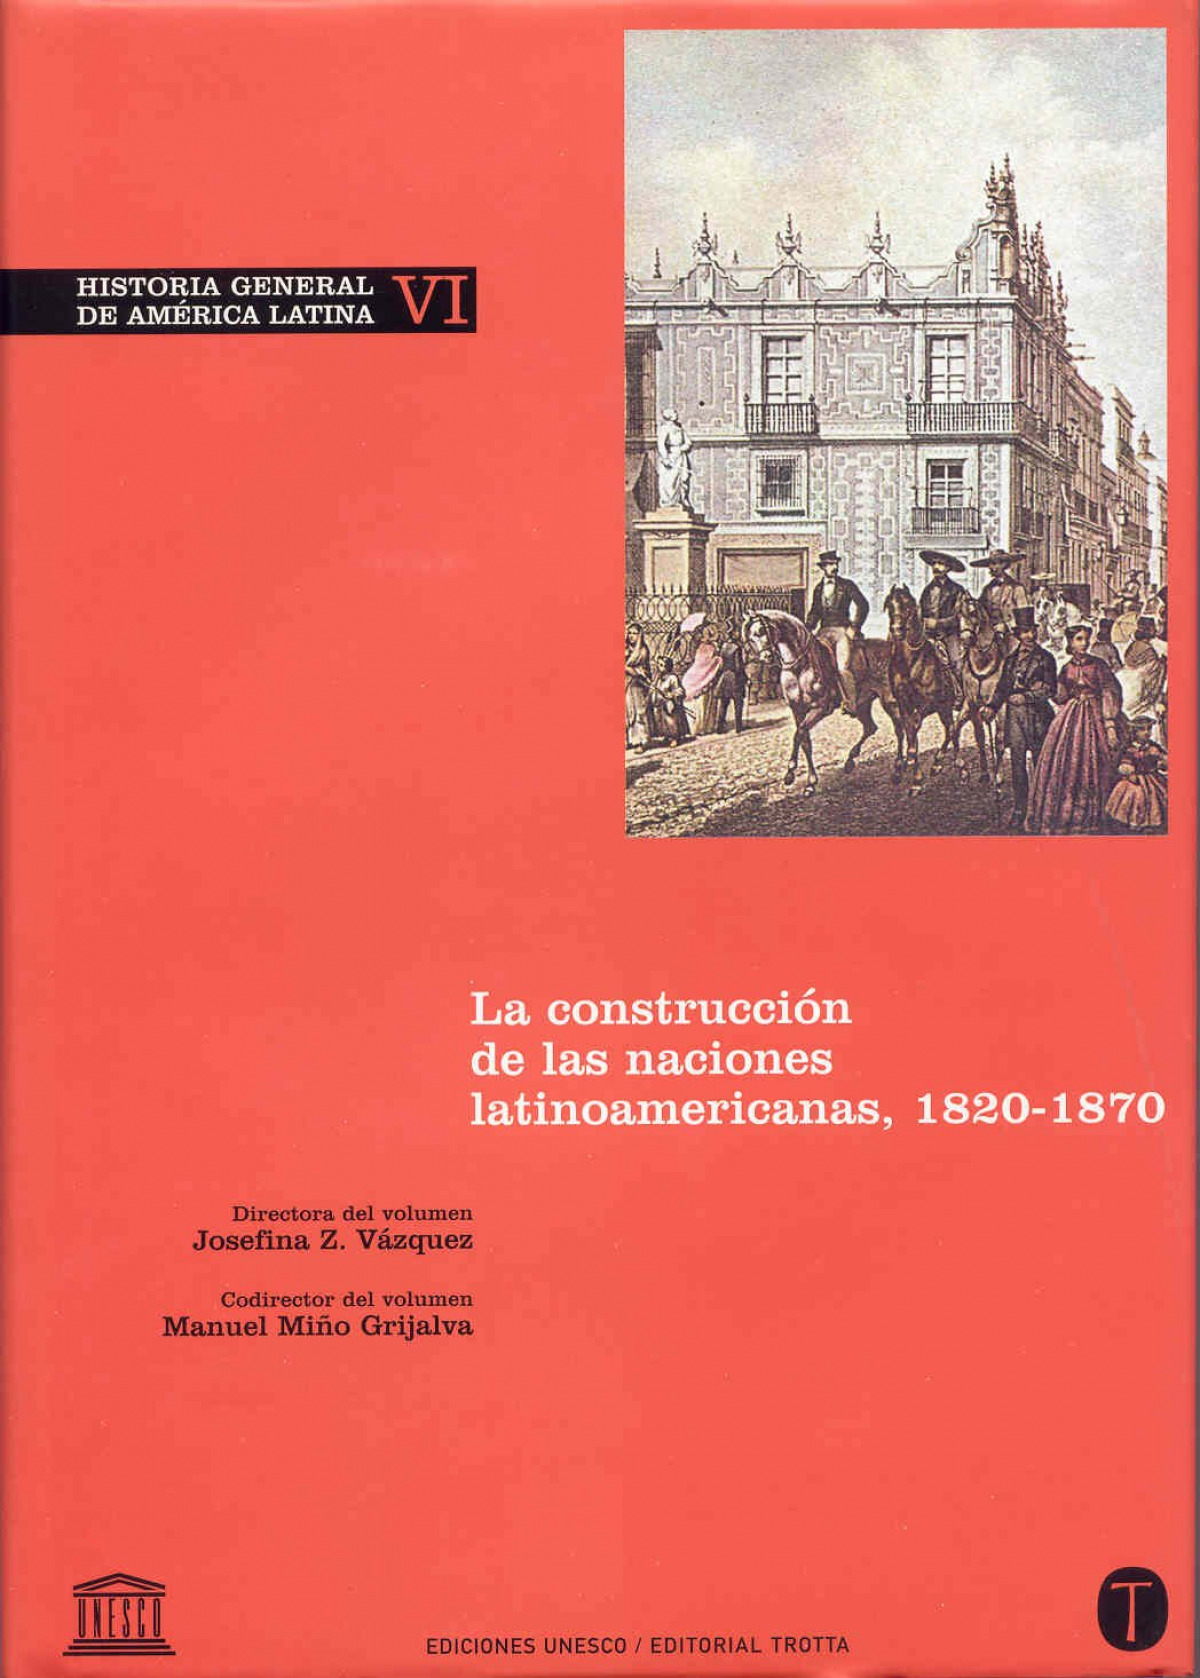 Historia General de América Latina Vol. VI La construcción de las naci - Vazquez, Josefina Z./Miño Grijalva, Manuel